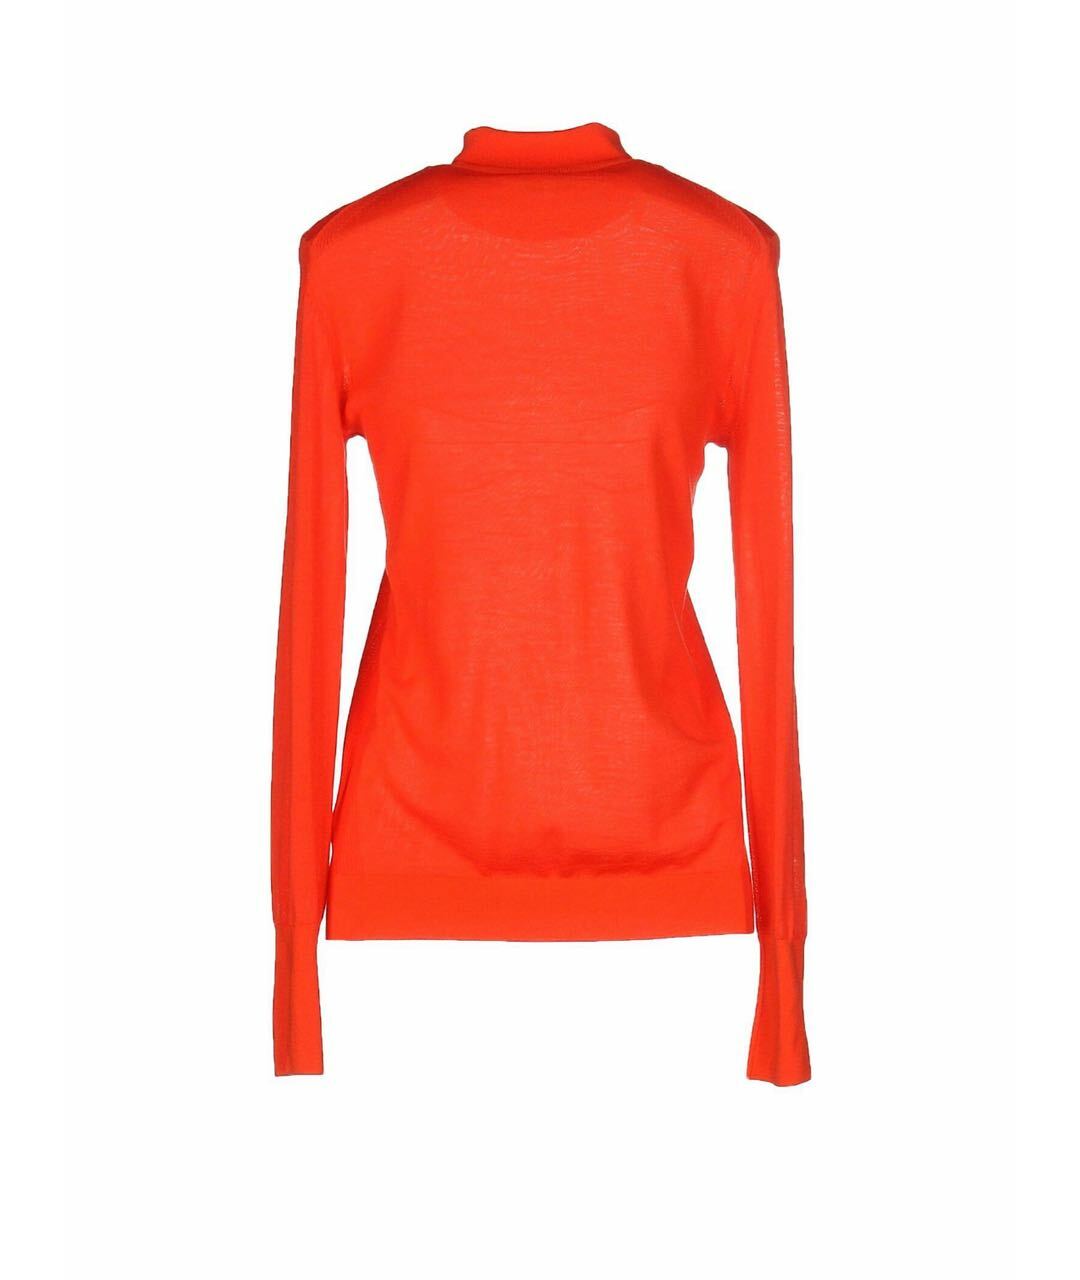 KENZO Оранжевый шерстяной джемпер / свитер, фото 2